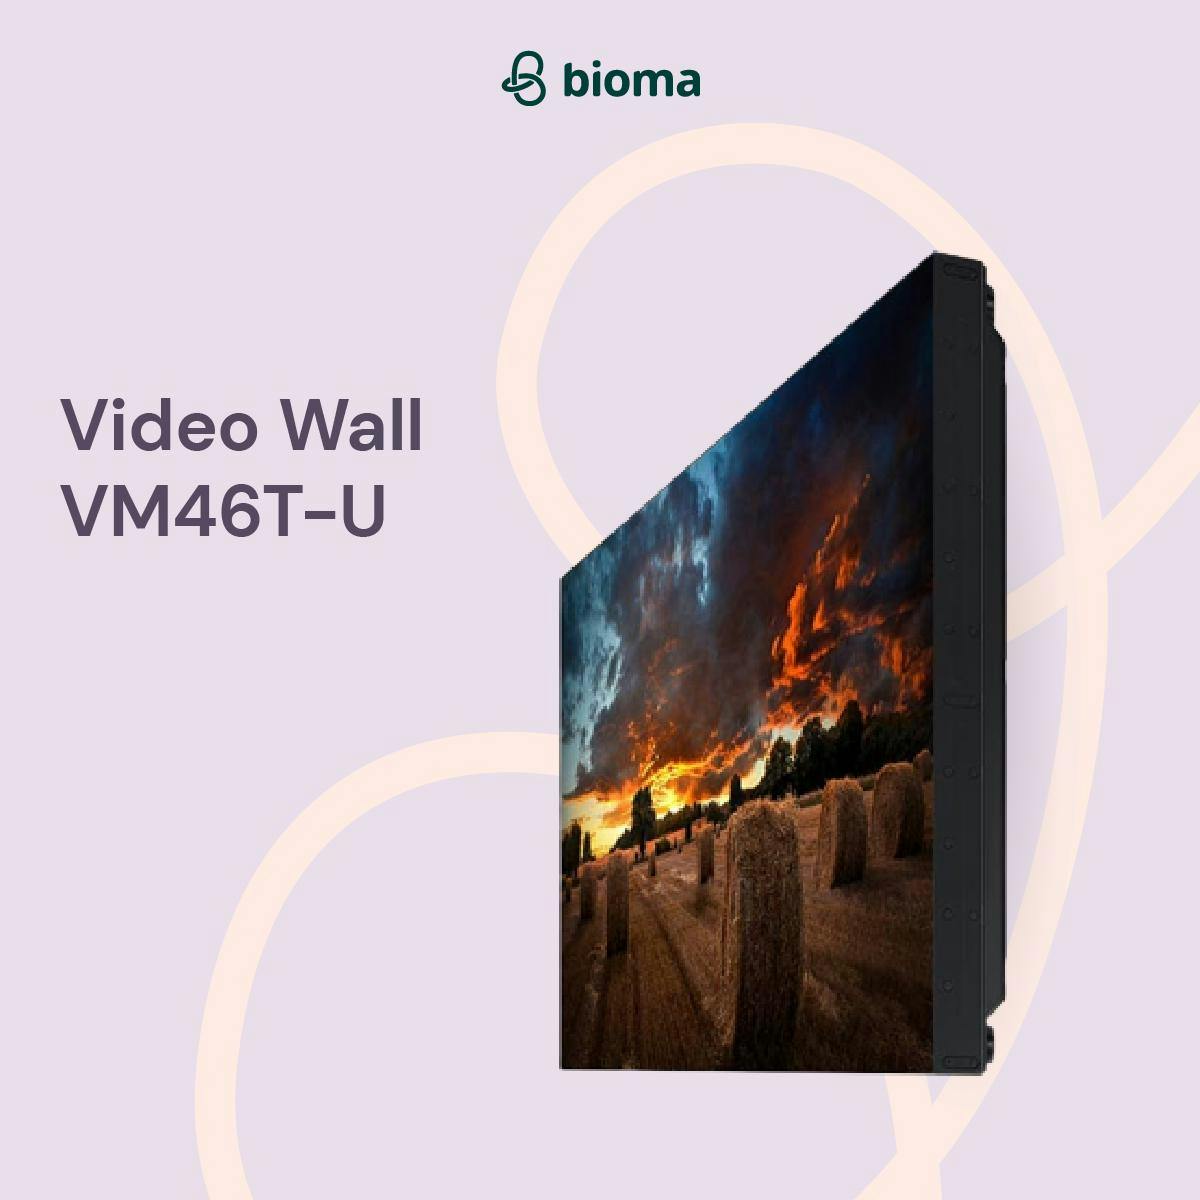 Video Wall VM46T-U